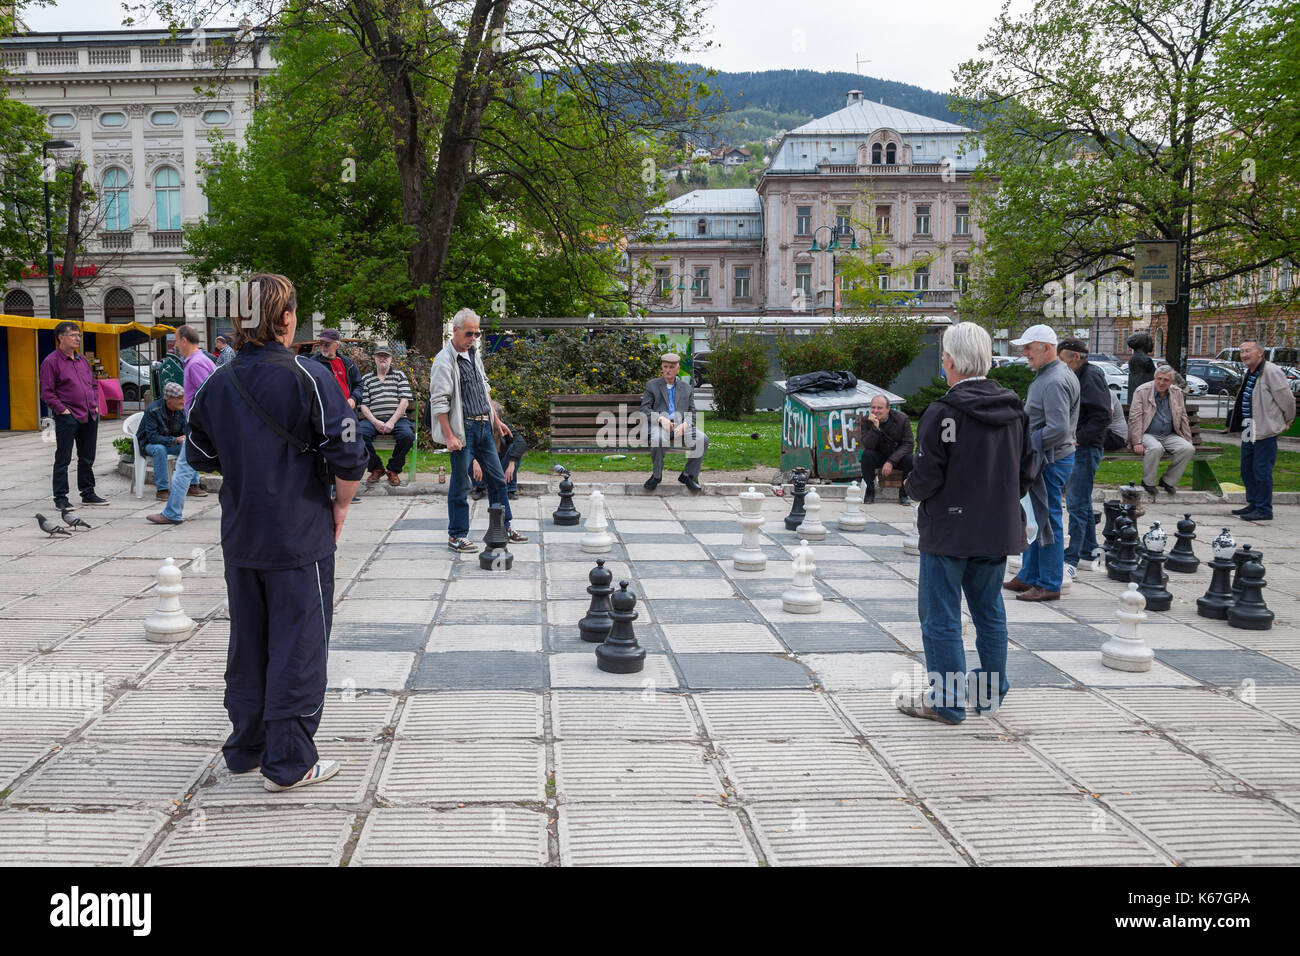 Sarajevo, Bosnie-Herzégovine - 15 avril 2017 : de vieux hommes jouant un jeu d'échecs géant dans le centre-ville de Sarajevo, capitale de la Bosnie. ce che Banque D'Images